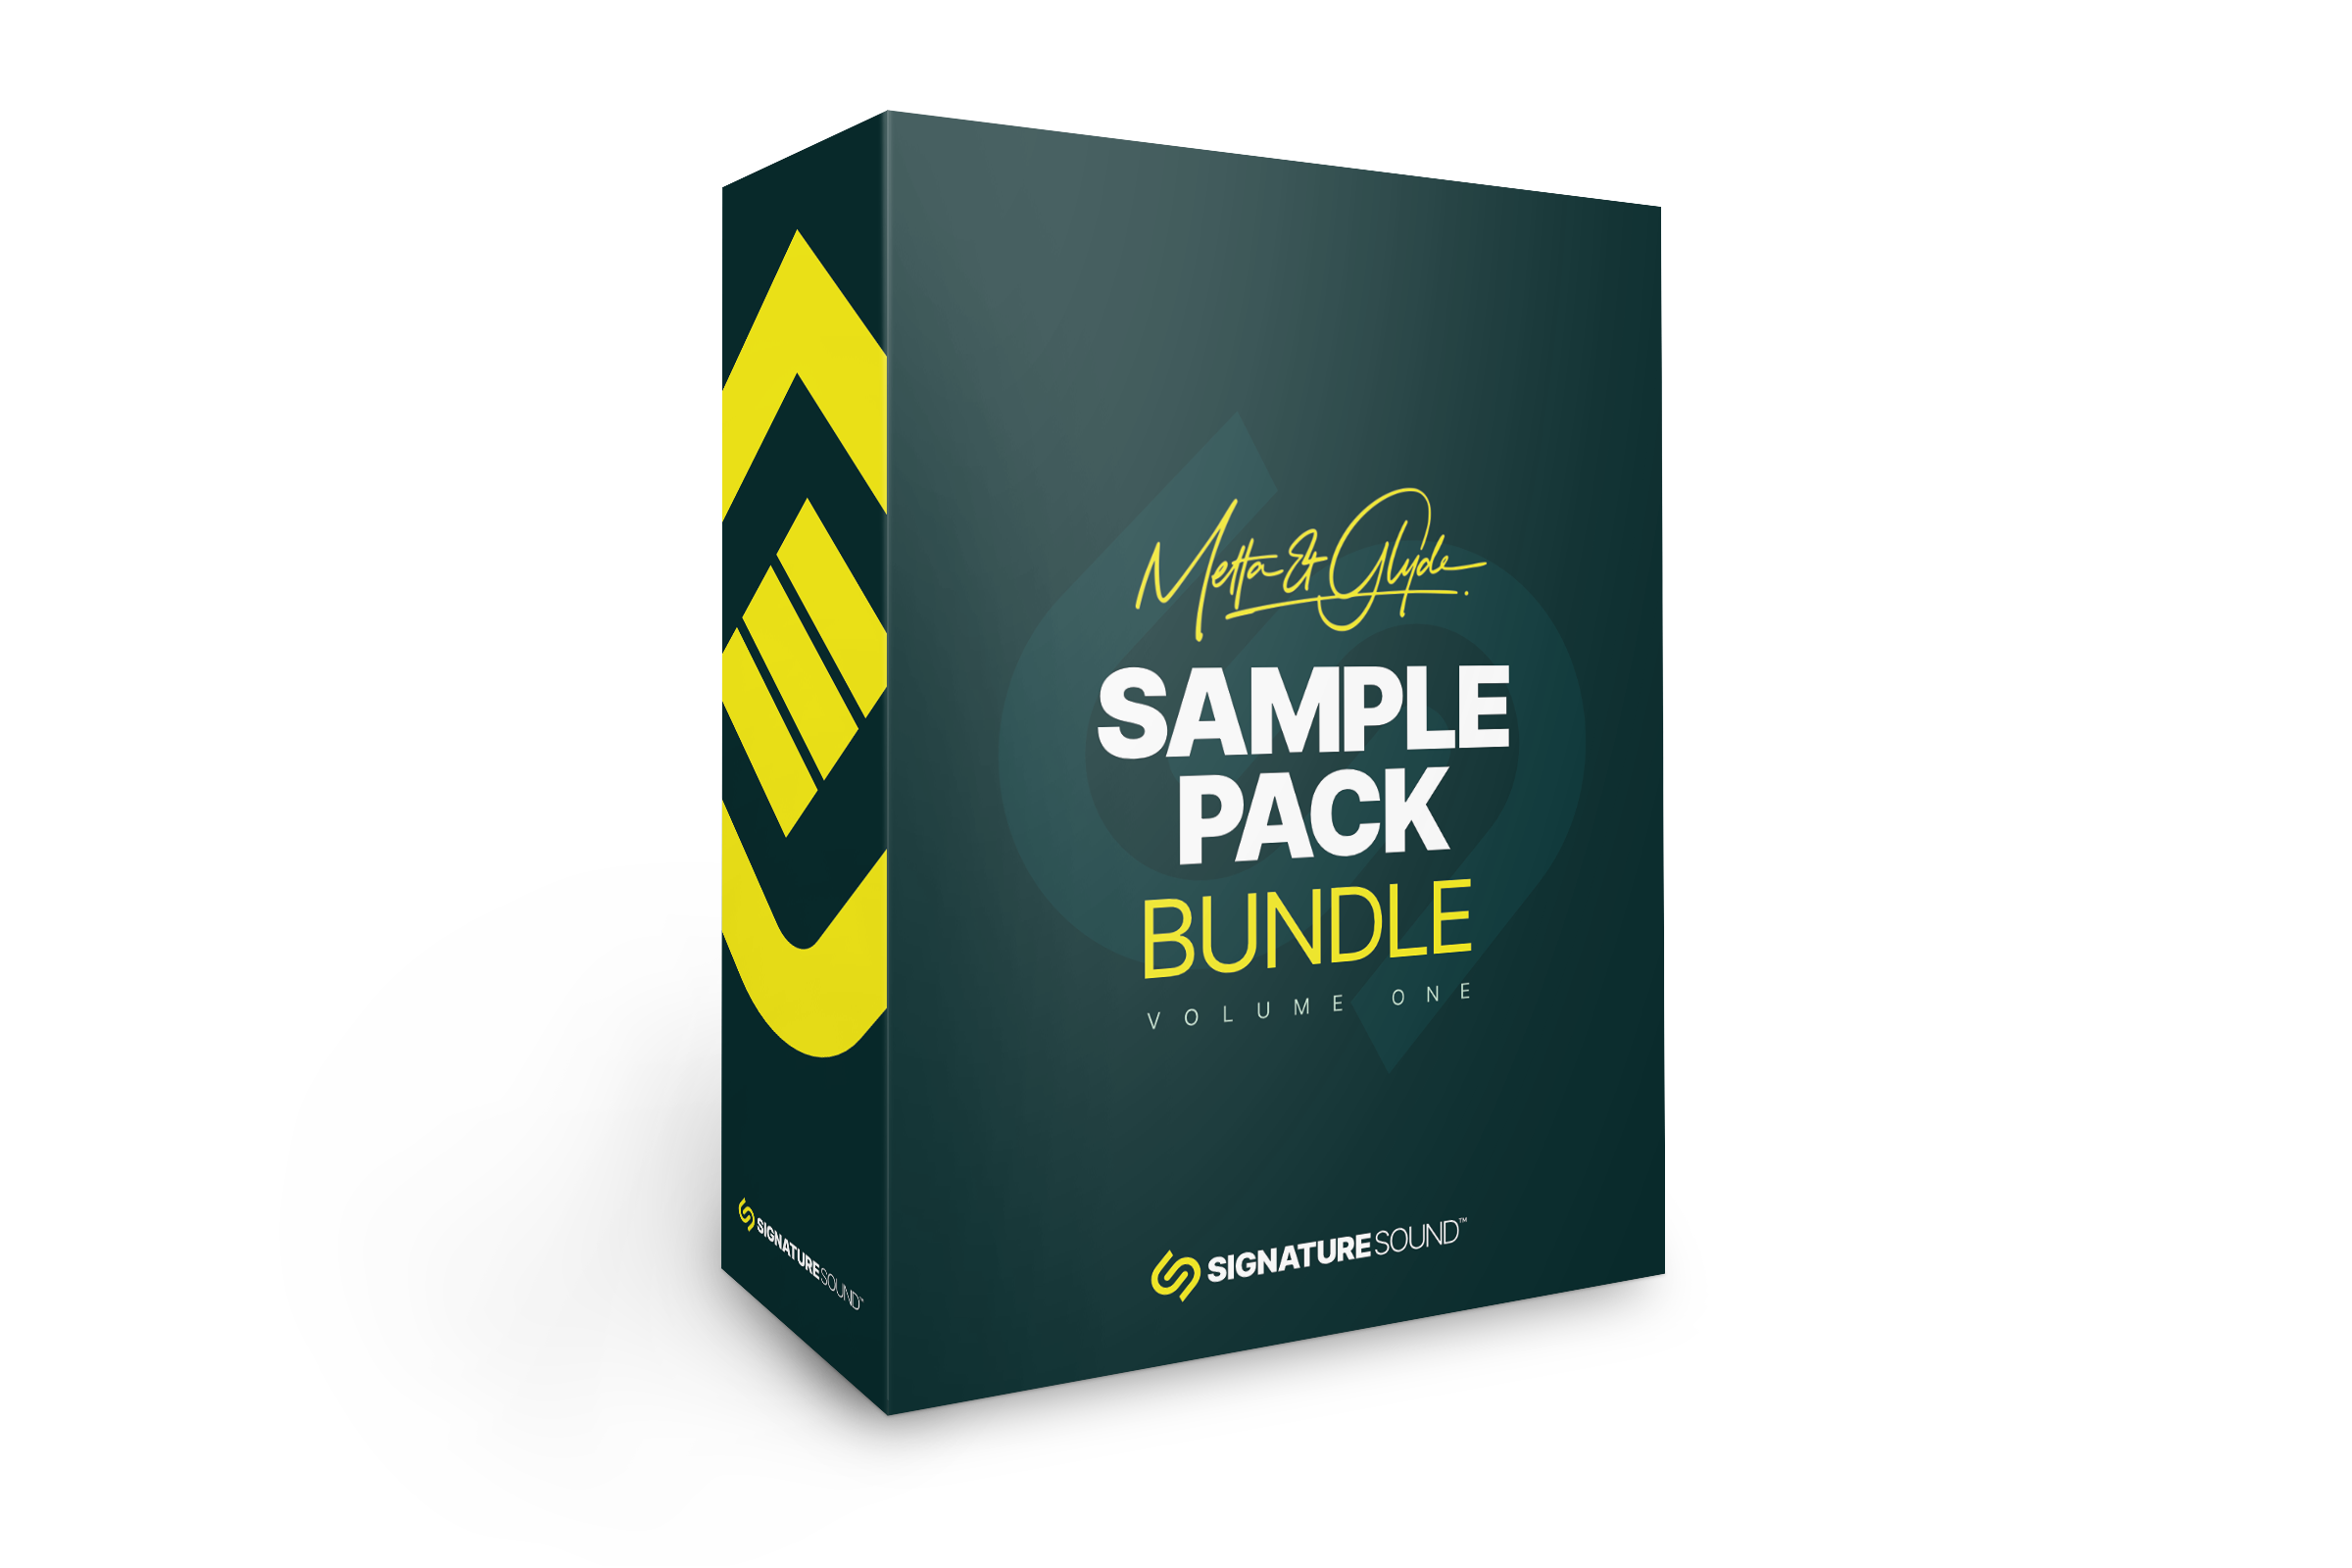 Metta & Glyde Sample Pack Bundle Volume One